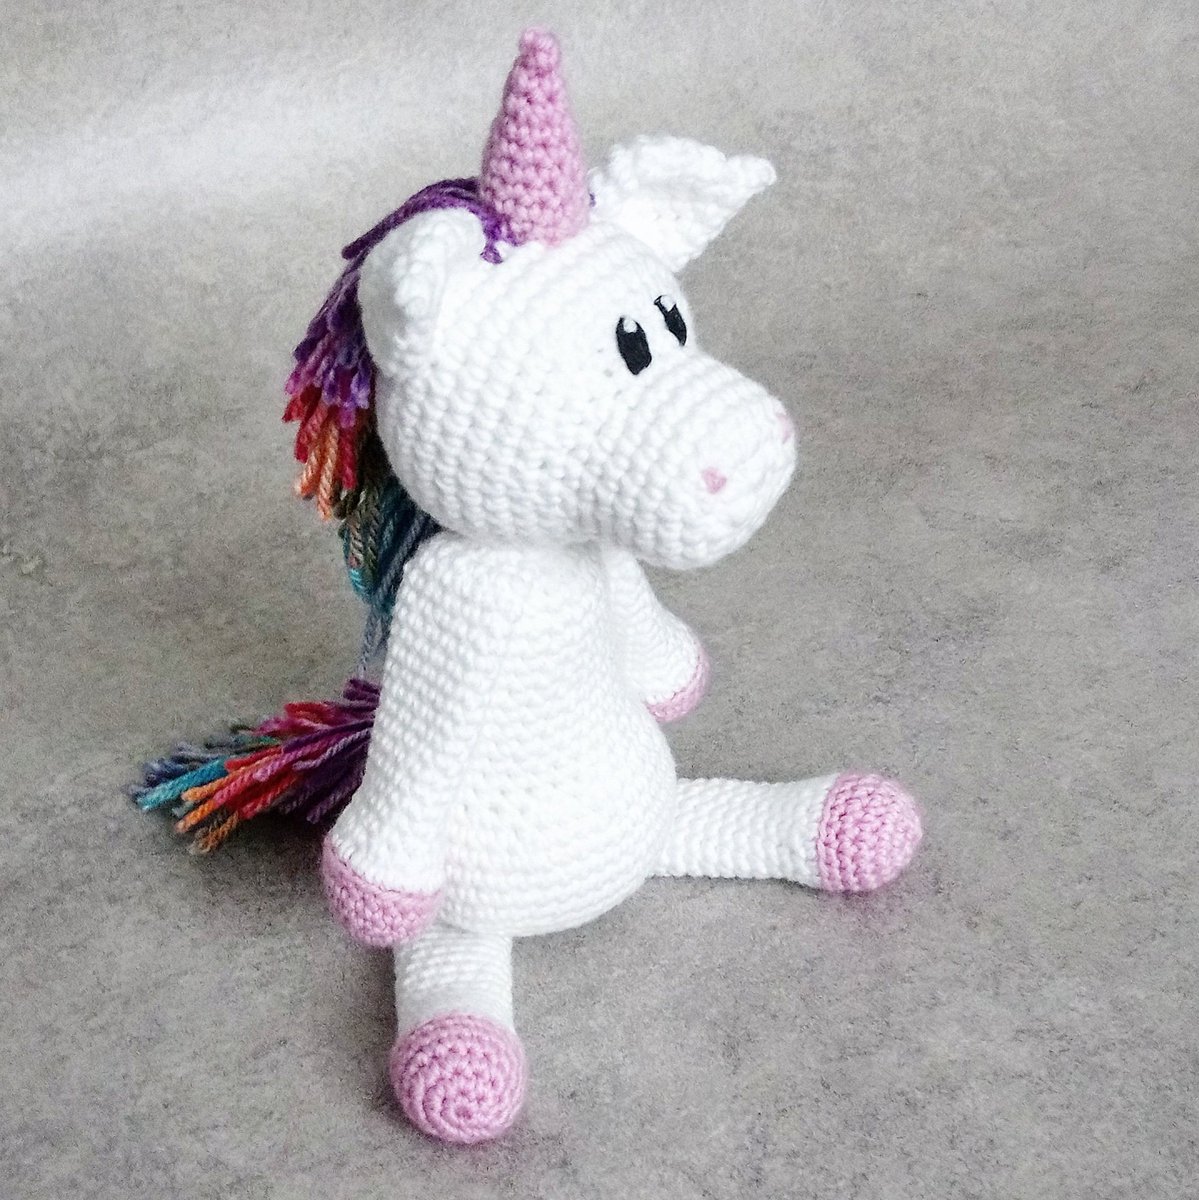 Making her début her in the Hooked on Love lounge ~ Pink unicorn 🦄

I'm loving the colour splash this week 🌈

#crochet #crafts #unicorns #unicorn #unicorncrochet #unicorntoy #smallbusiness #uksmallbiz #UKBiz